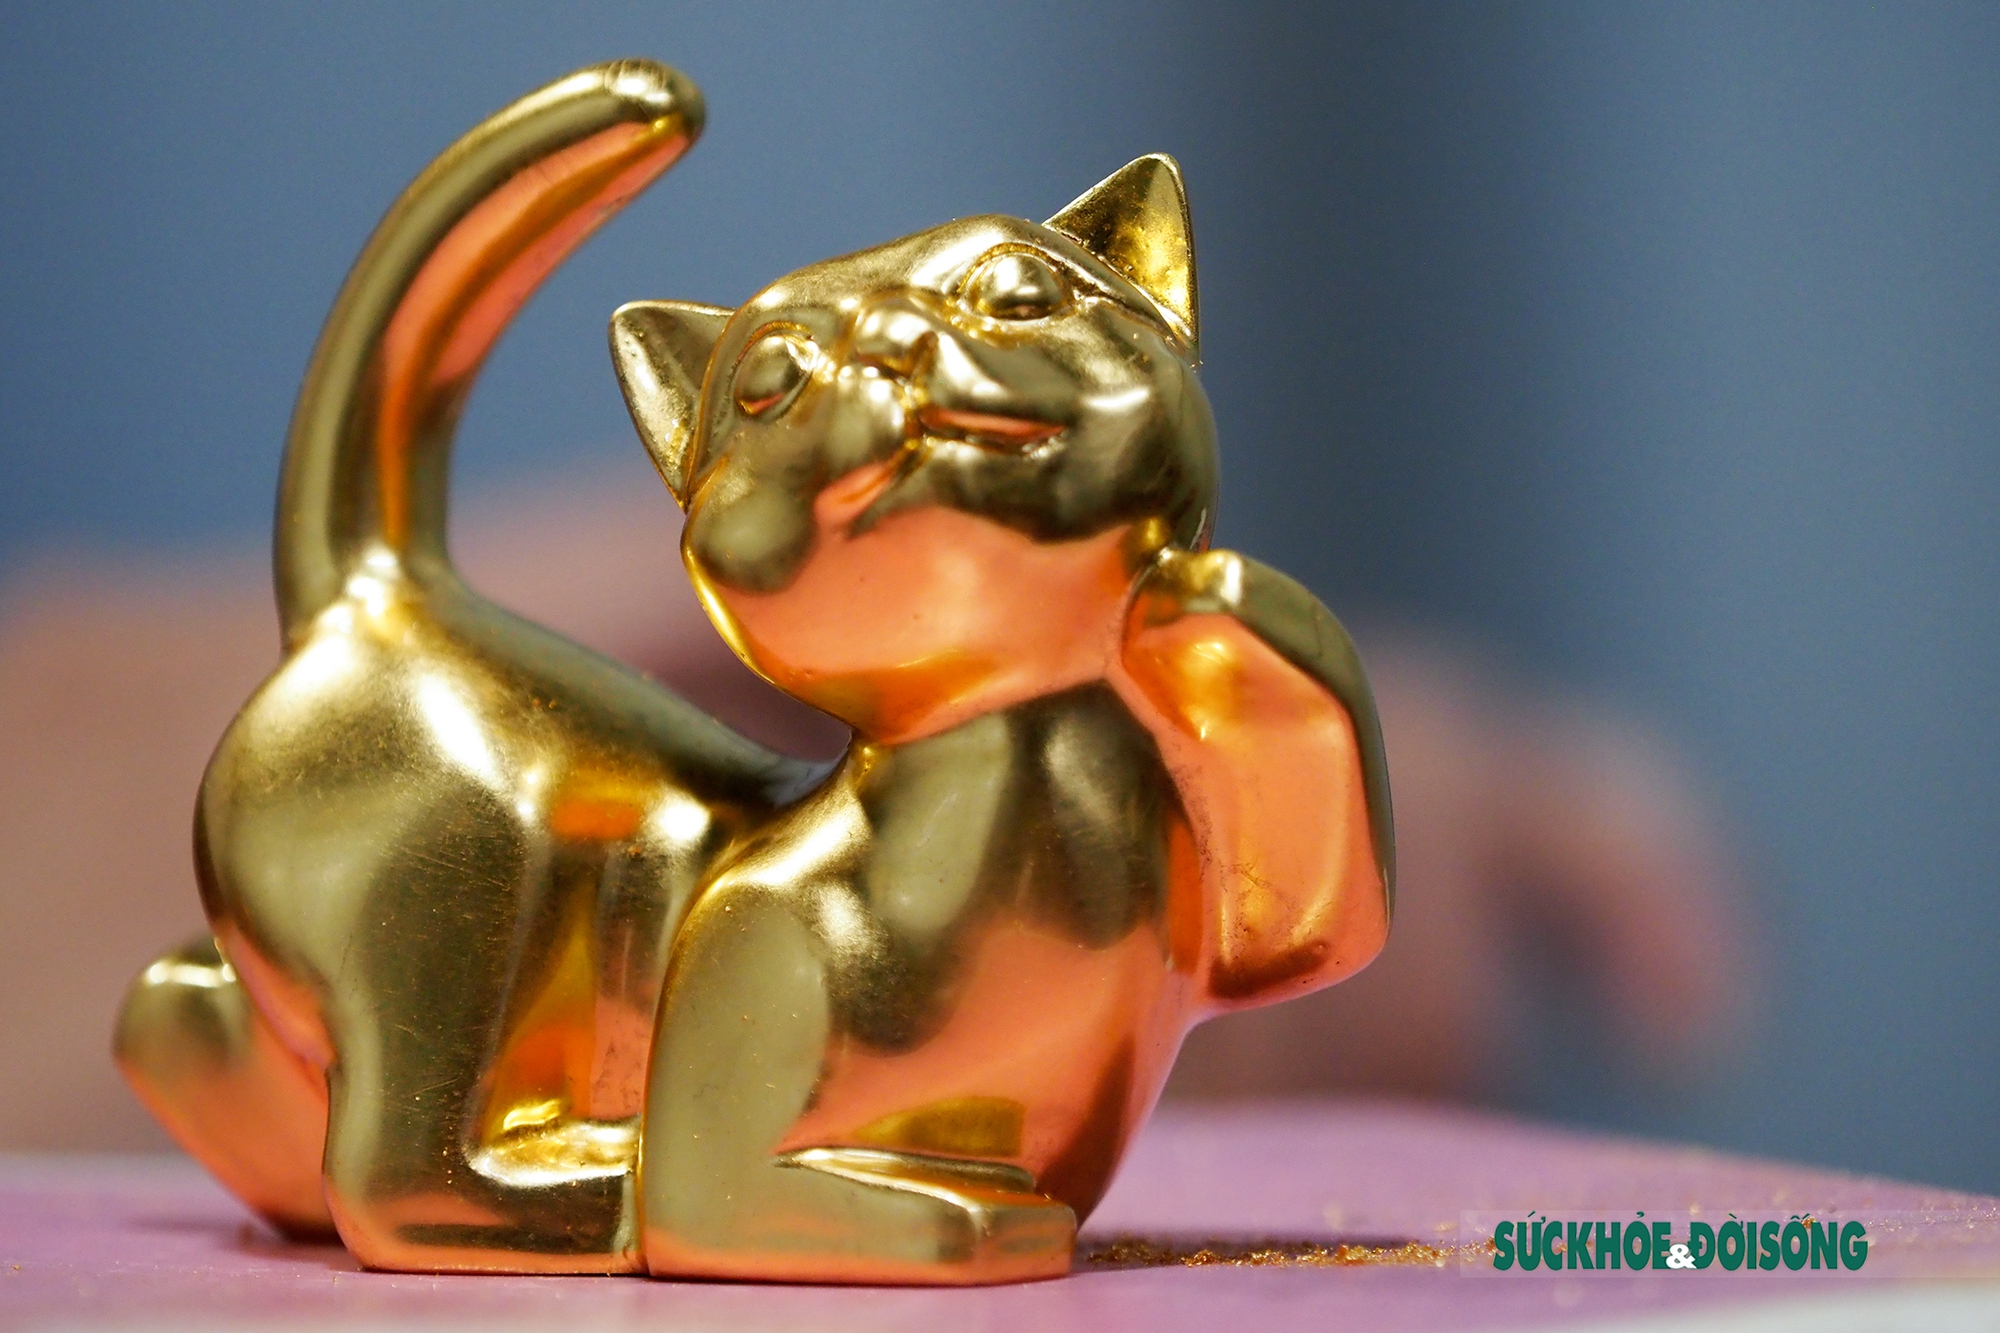 Gia đình mèo mạ vàng: Với màu sắc lung linh và đẳng cấp, những chú mèo mạ vàng sẽ khiến trái tim bạn tan chảy. Hãy cùng ngắm nhìn ảnh gia đình mèo mạ vàng vui tươi đang chơi đùa cùng nhau, đồng thời hiểu rõ hơn về ý nghĩa của mèo mạ vàng trong văn hóa phương Đông.